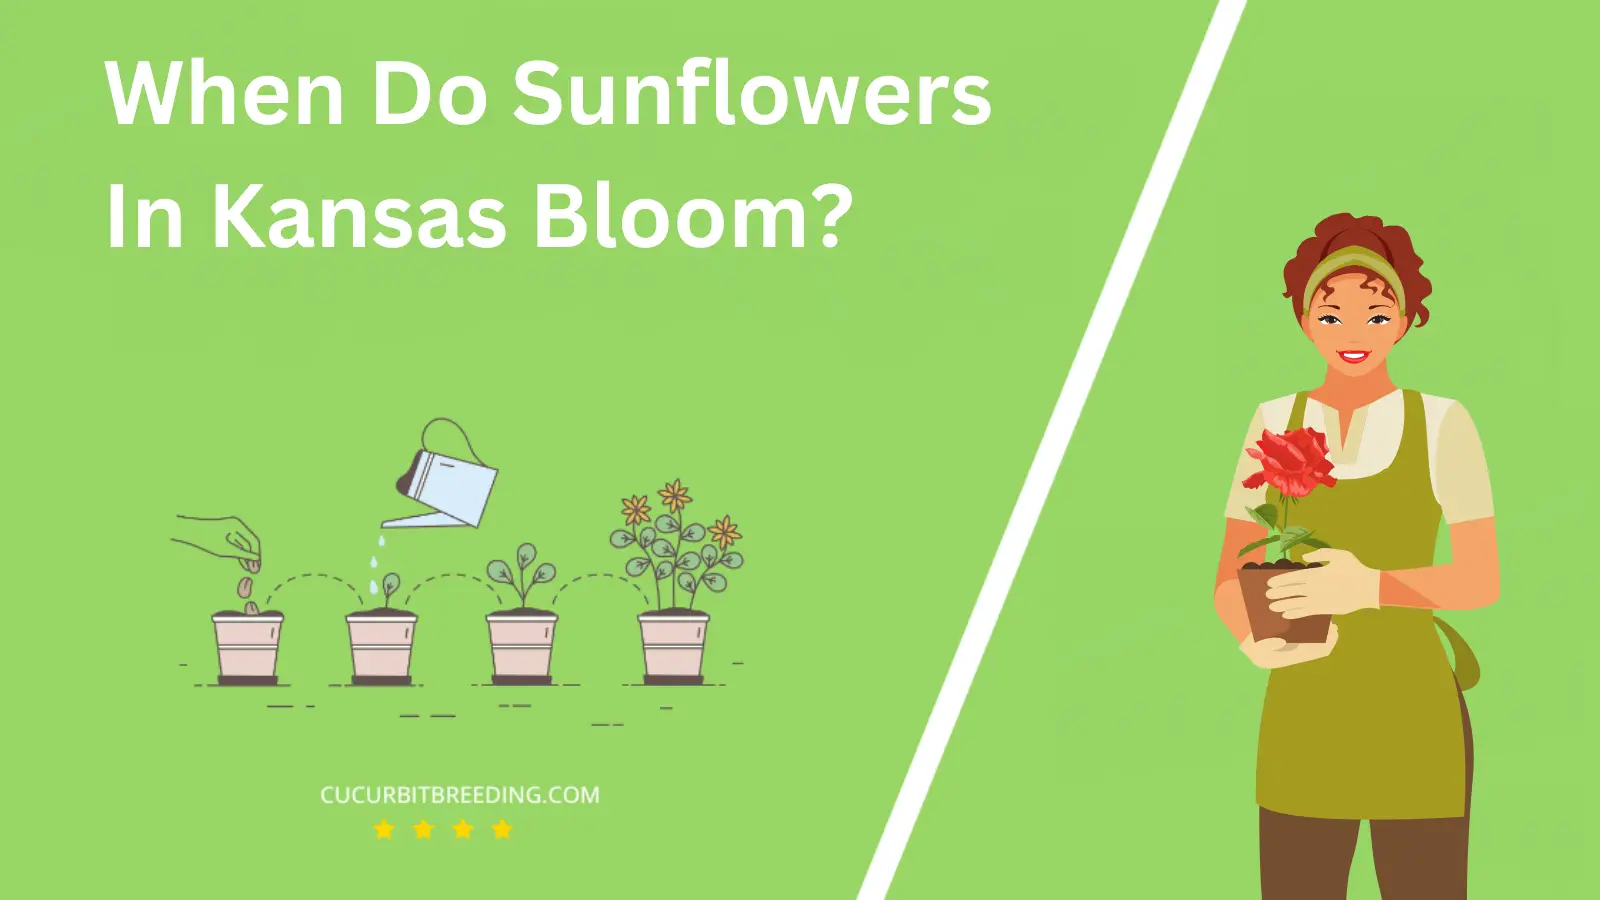 When Do Sunflowers In Kansas Bloom?